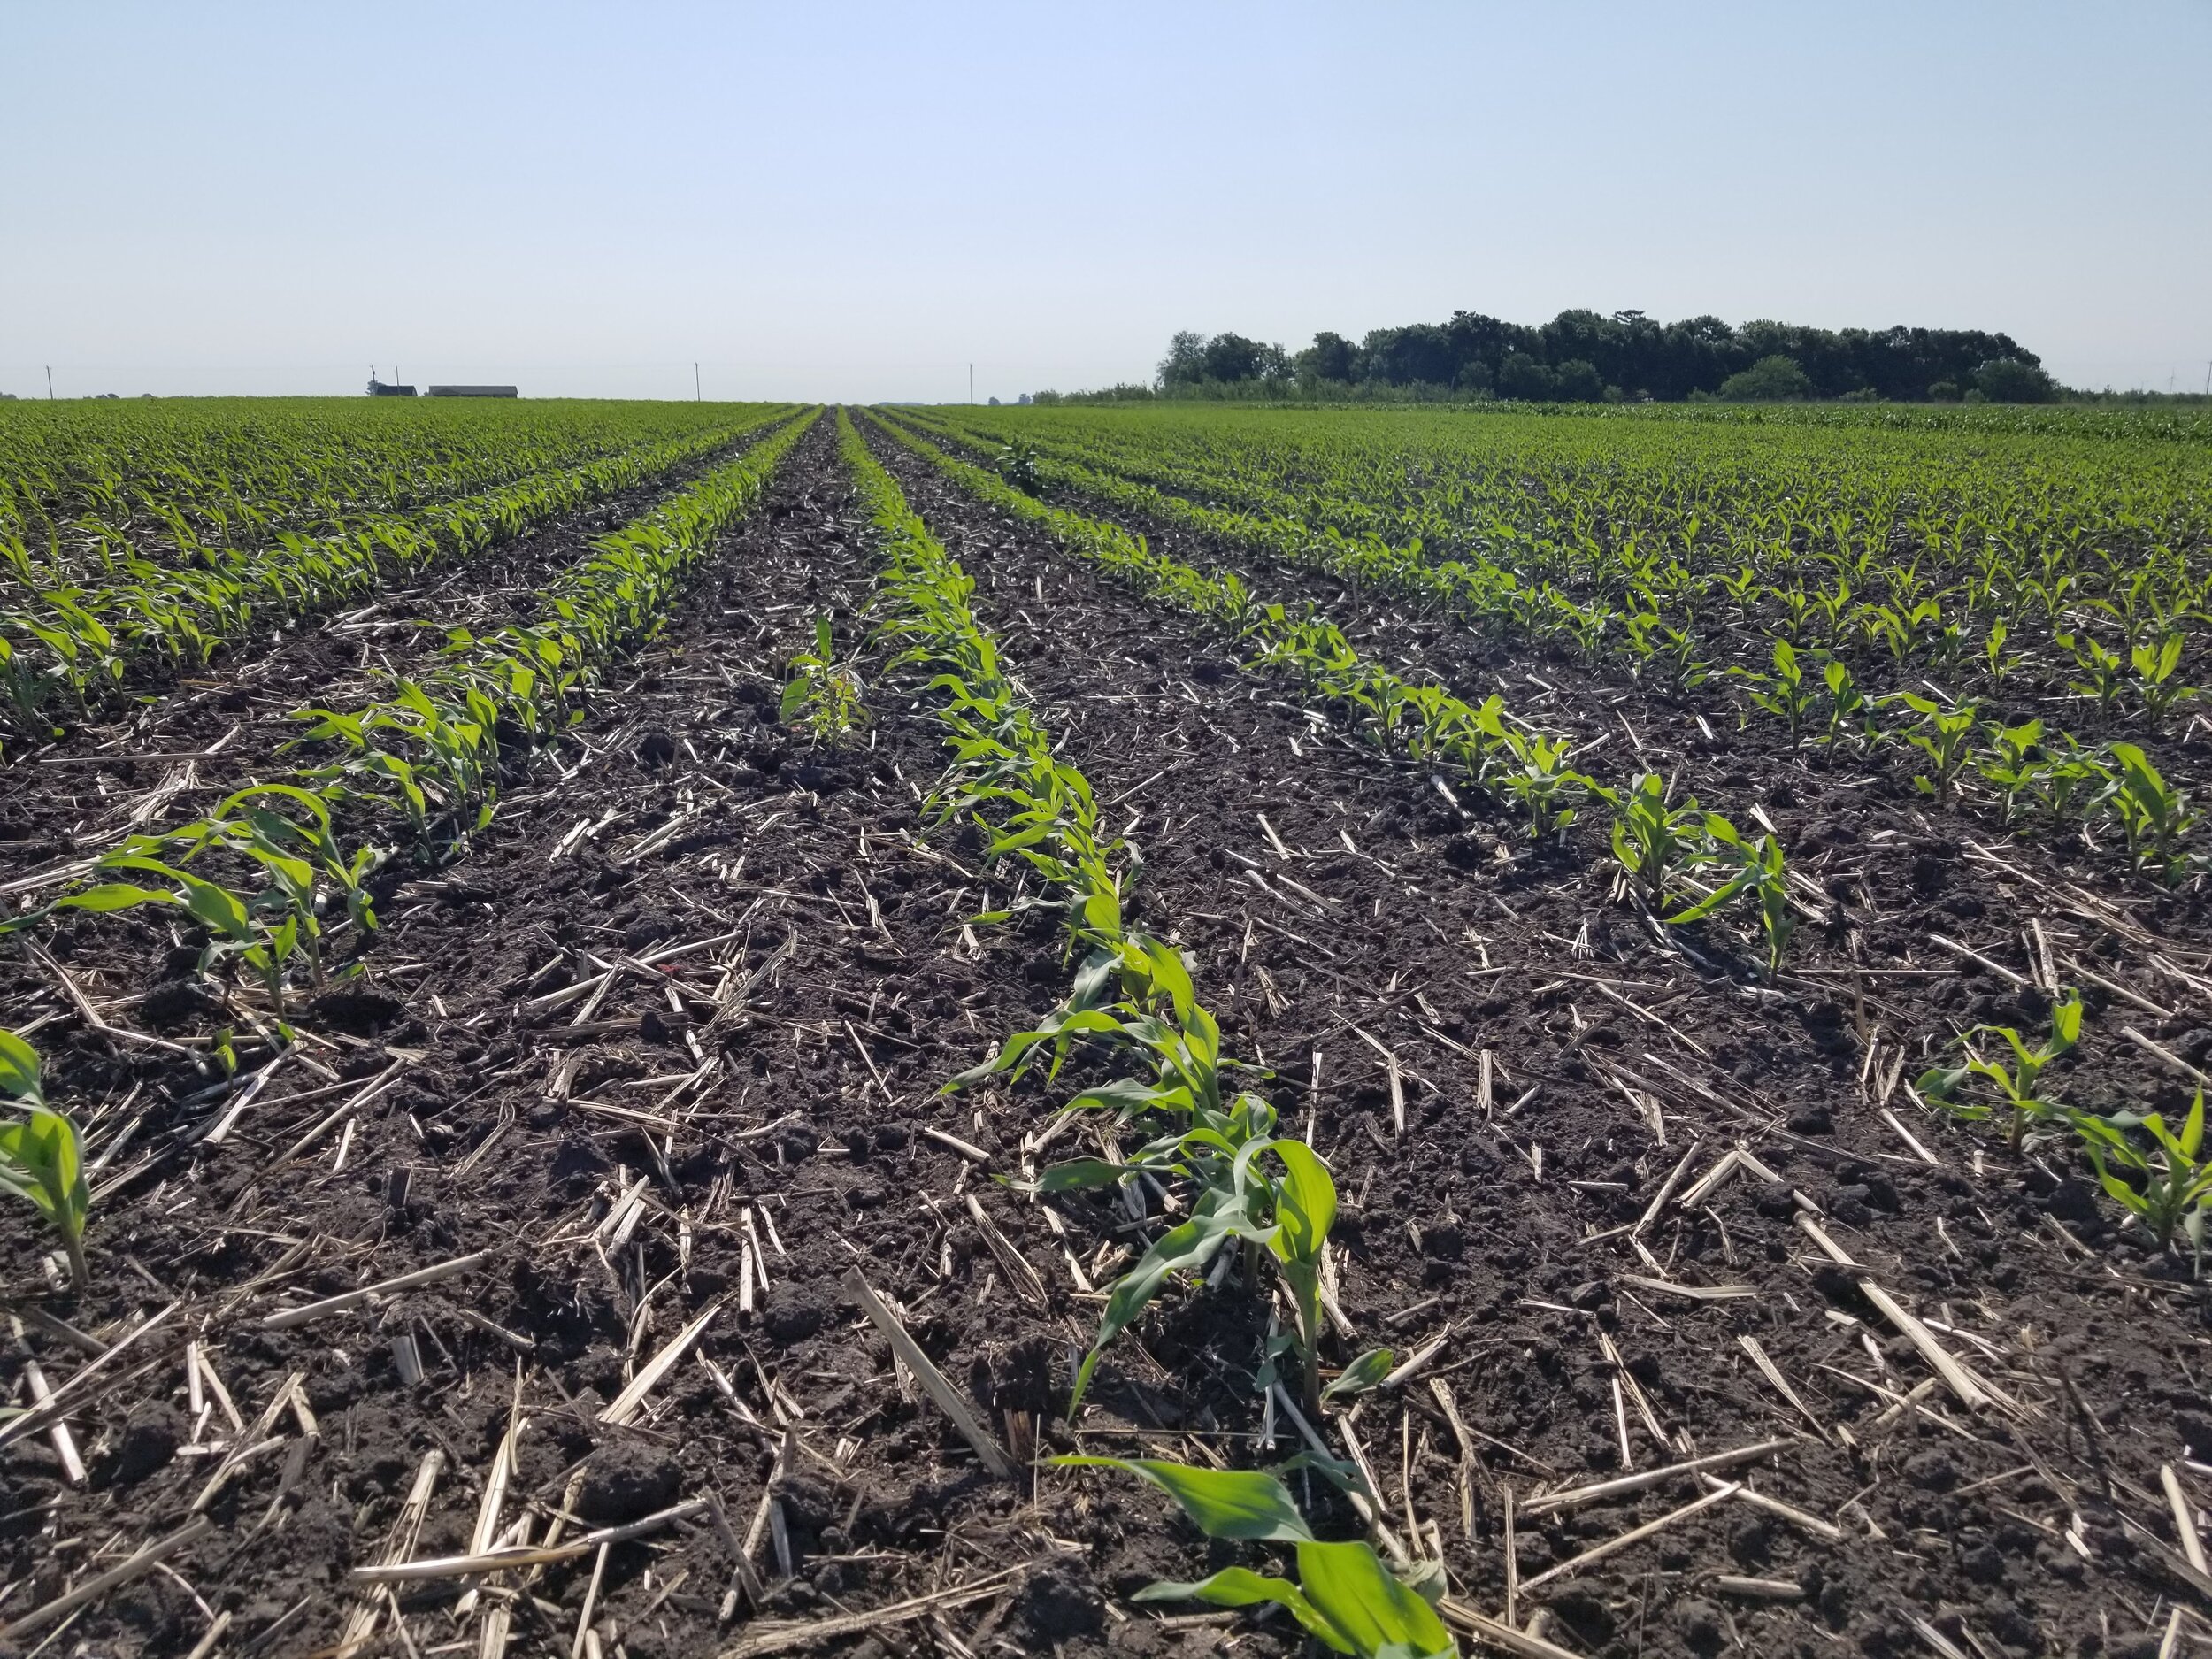 06.19.20 Organic corn growing well